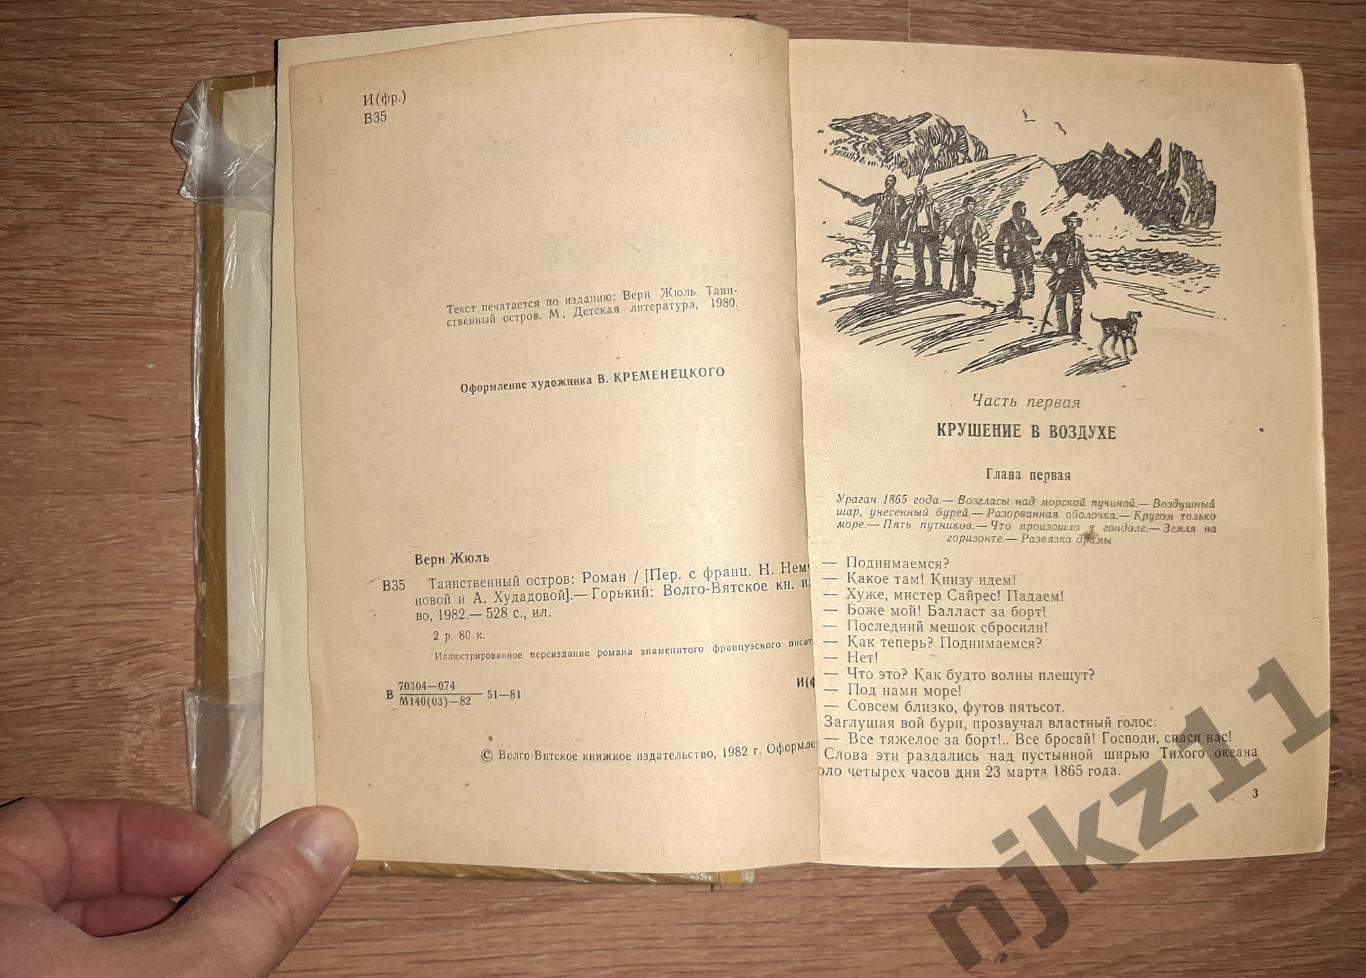 Верн, Жюль Таинственный остров 1982г волго-вятское кн.изд 3